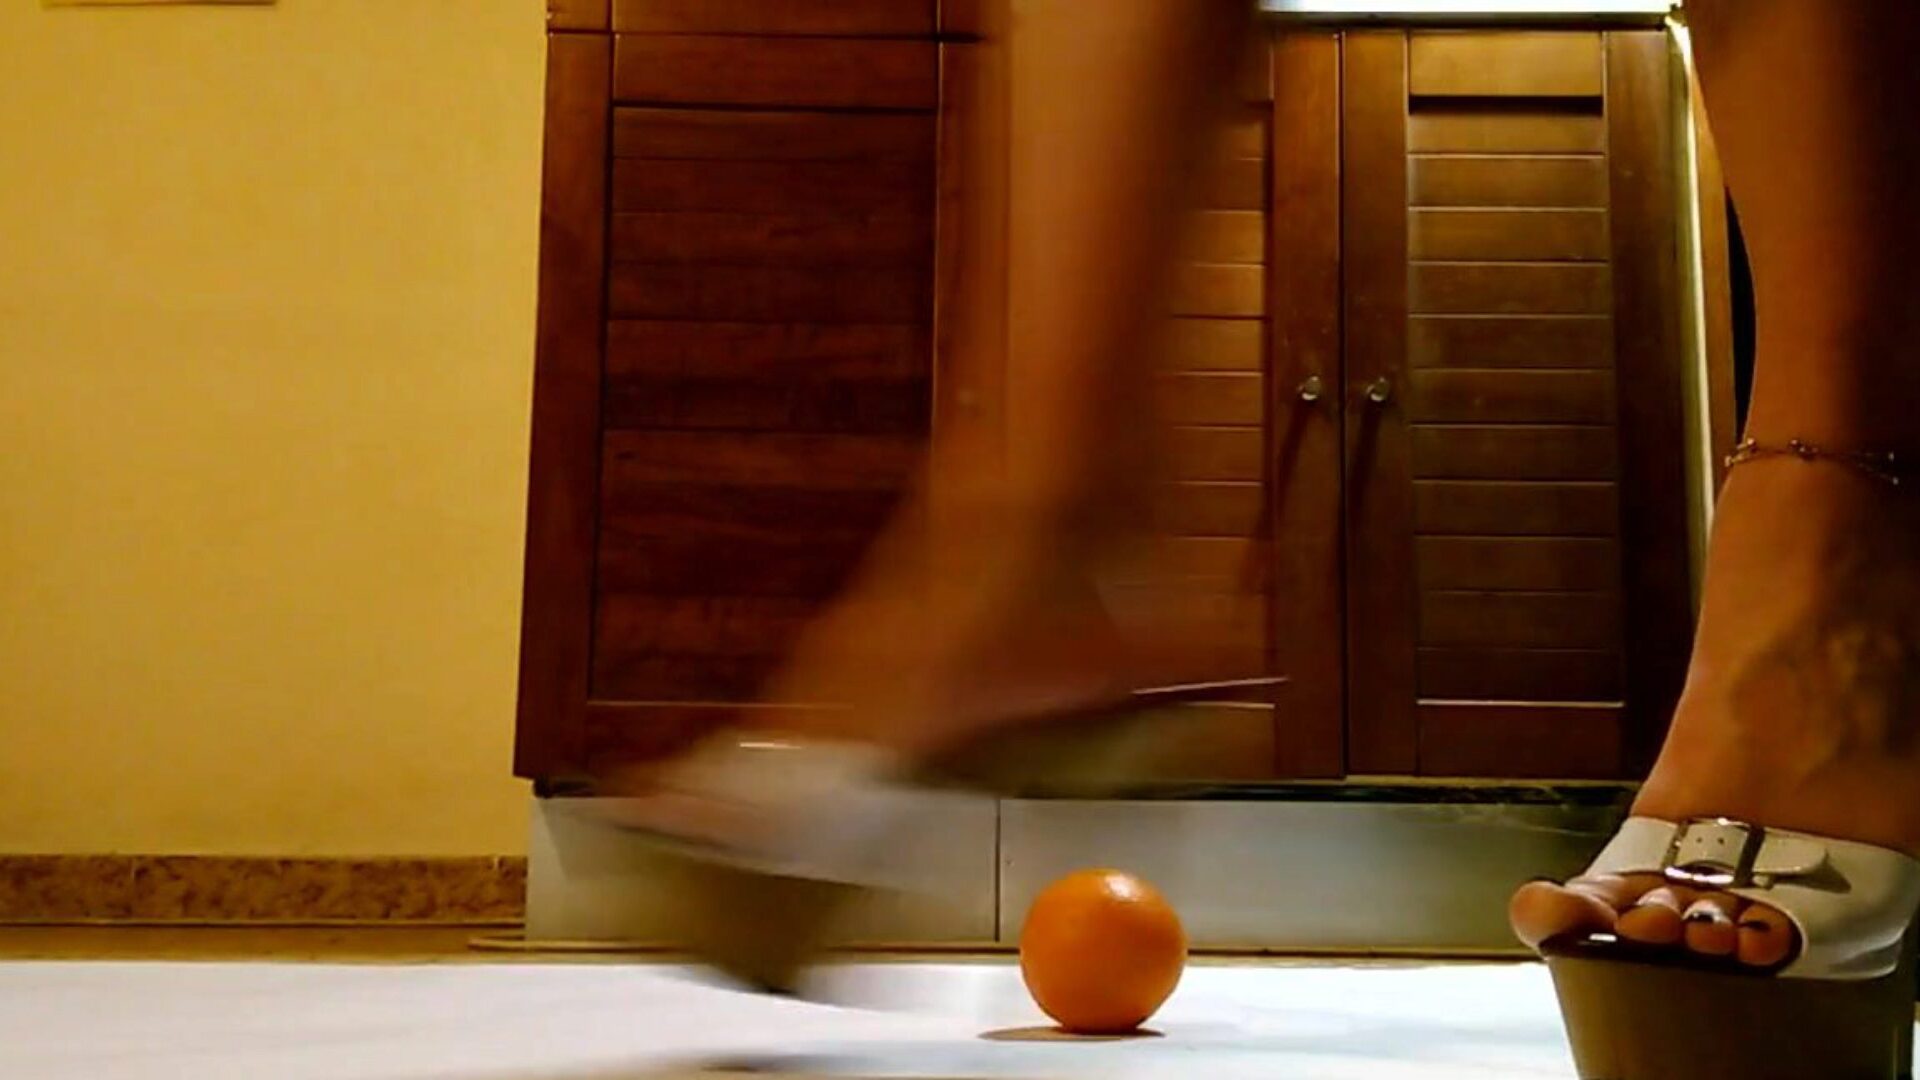 تلعب نادلة وتضرب باللون البرتقالي في حذاء عالي الكعب ذو منصة عالية النادلة واستمتع بوقتك البرتقالي في أحذية عالية الكعب ذات منصة مثيرة